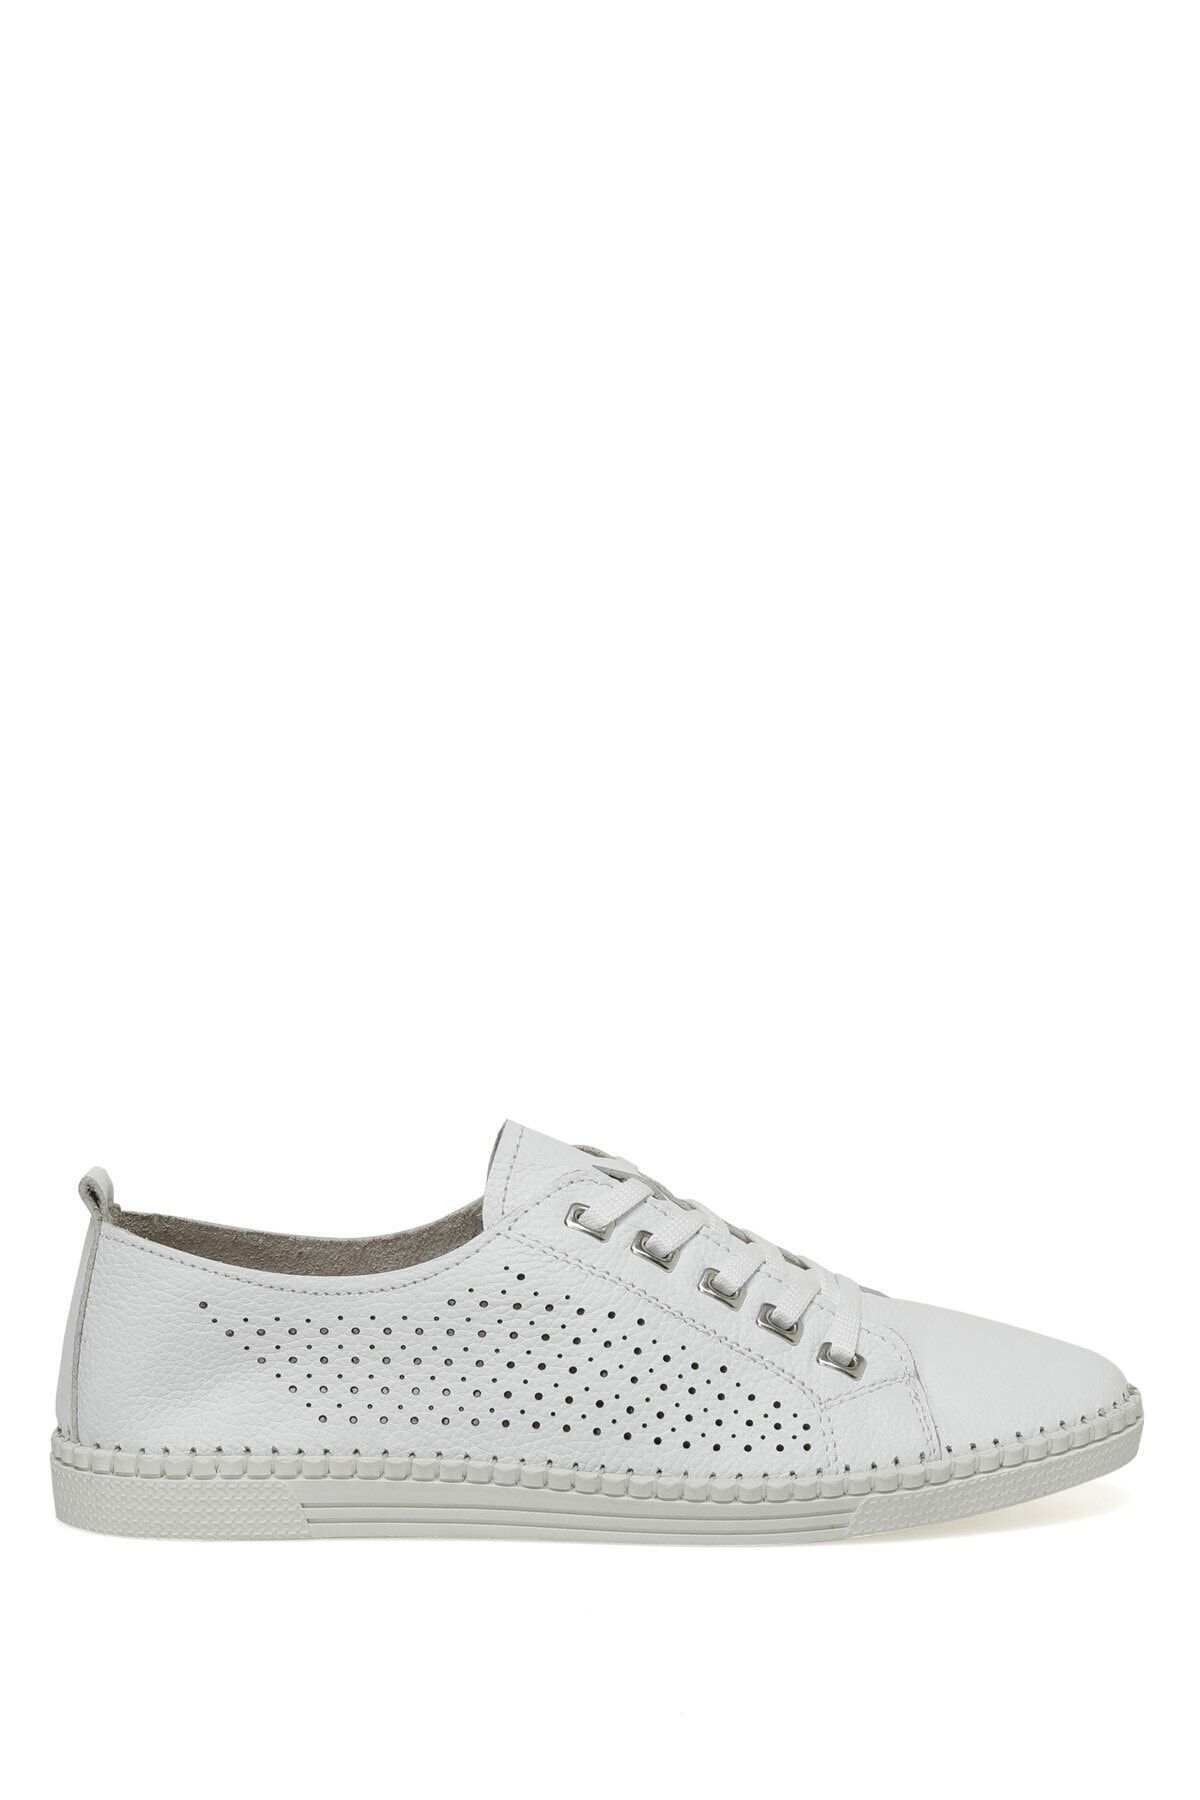 Polaris 162453.z3fx Beyaz Kadın Comfort Ayakkabı